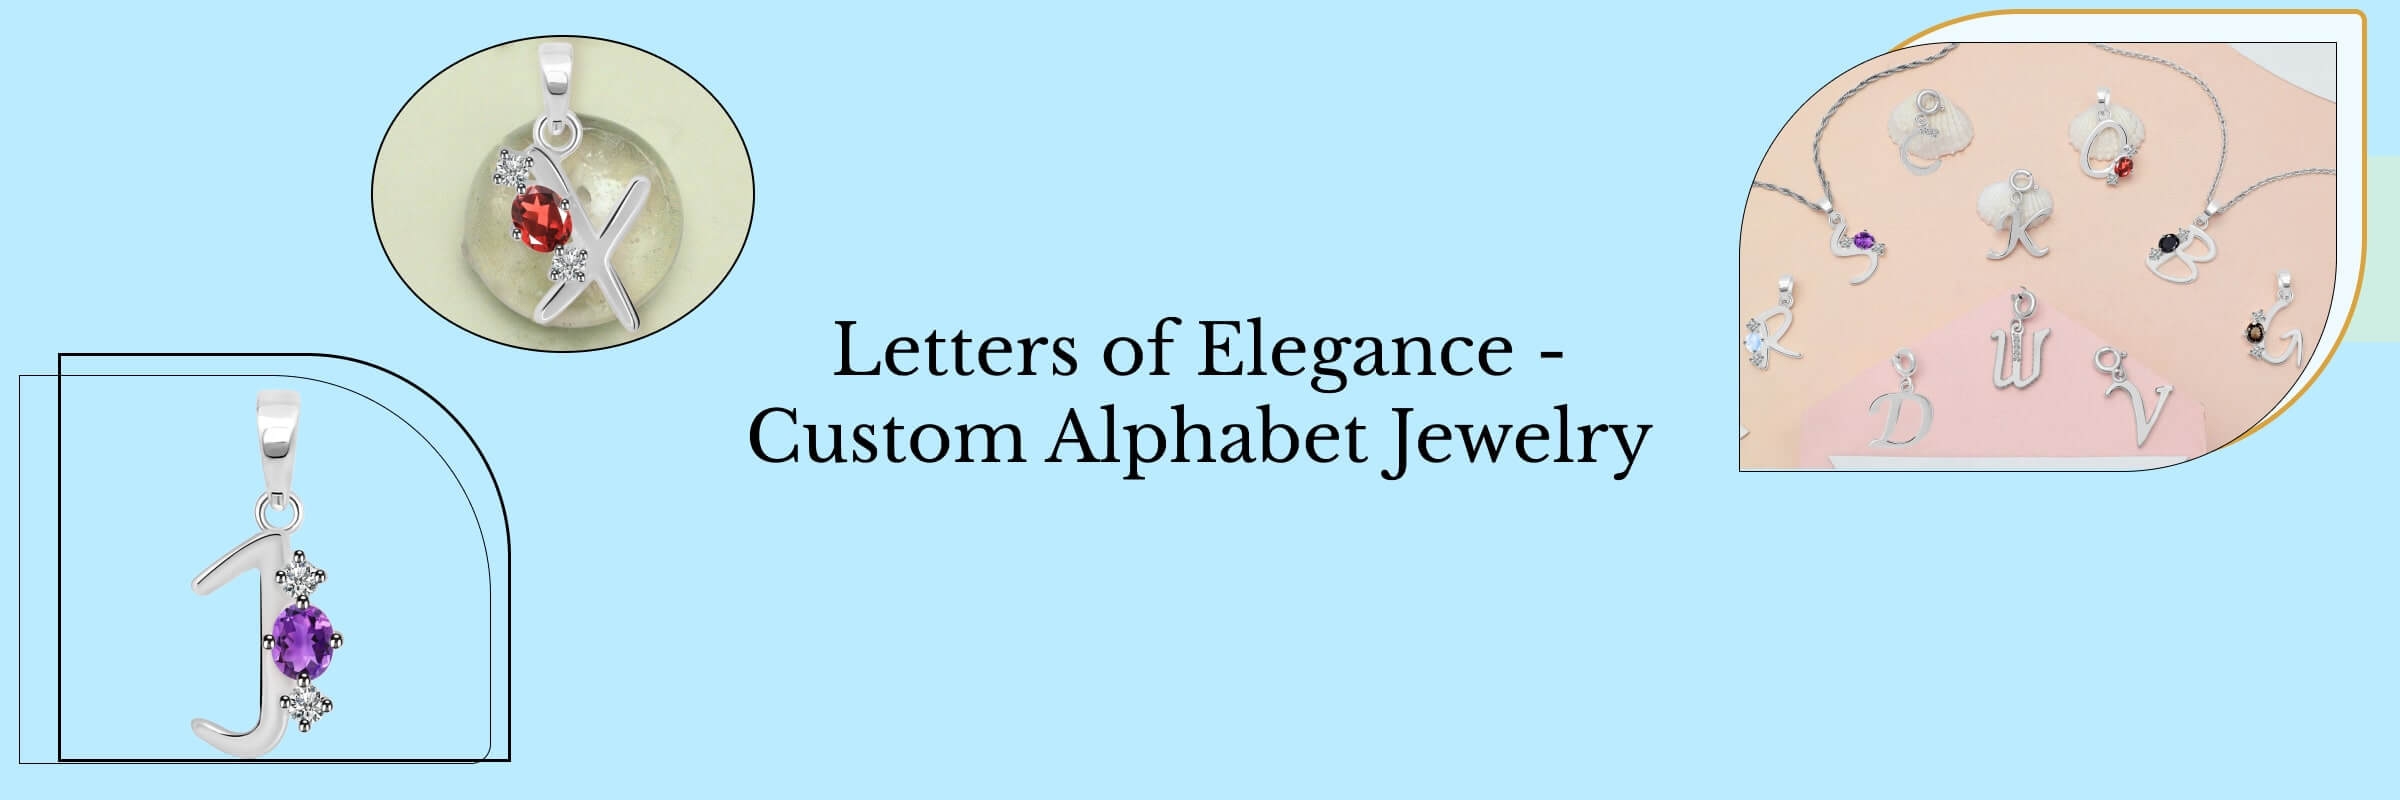 Customized Alphabet Jewelry